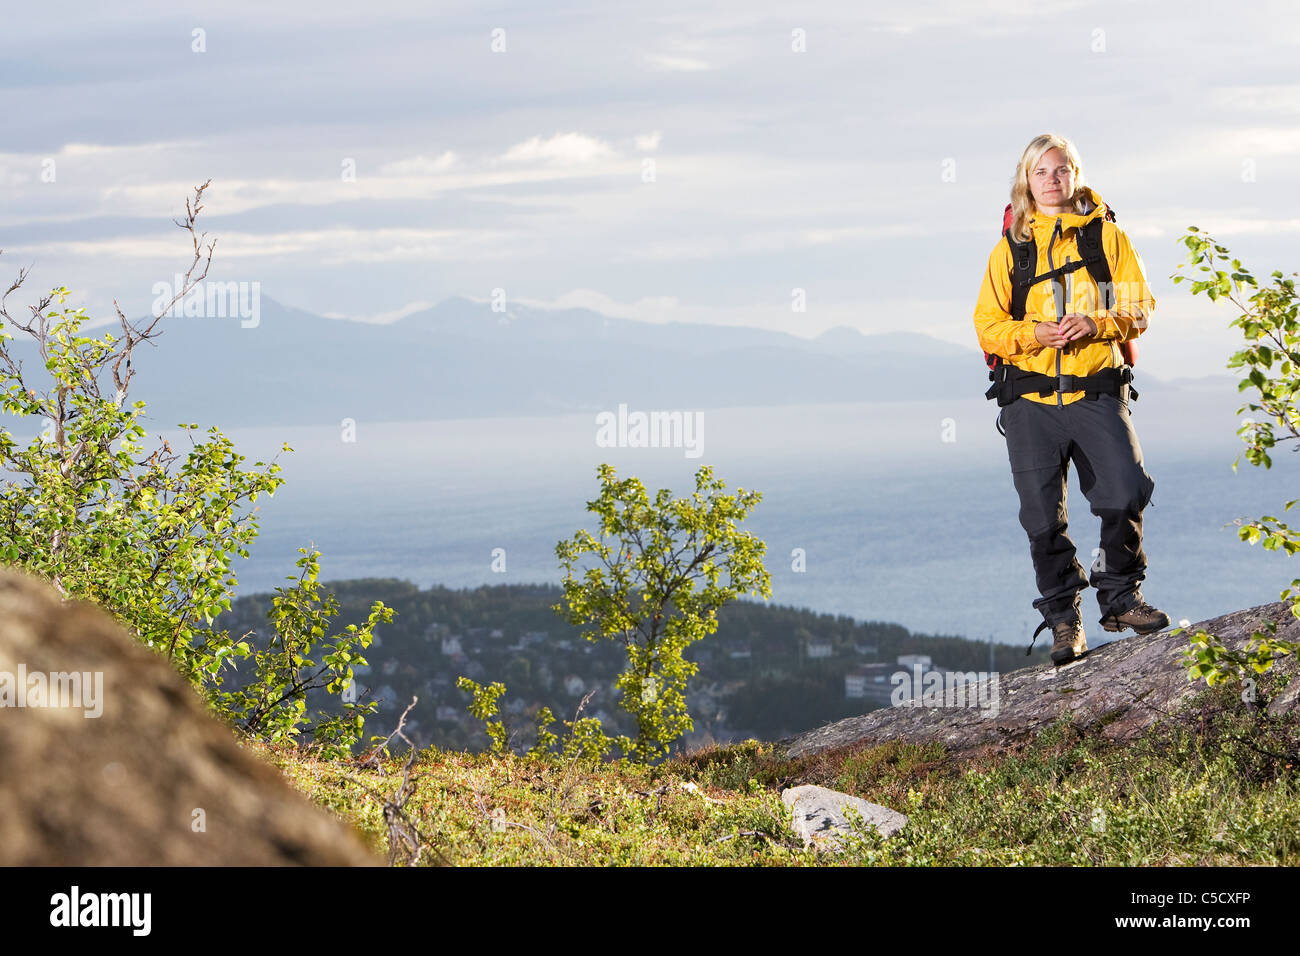 A piena lunghezza Ritratto di una donna in conchiglia gialla sulla montagna contro le nubi Foto Stock